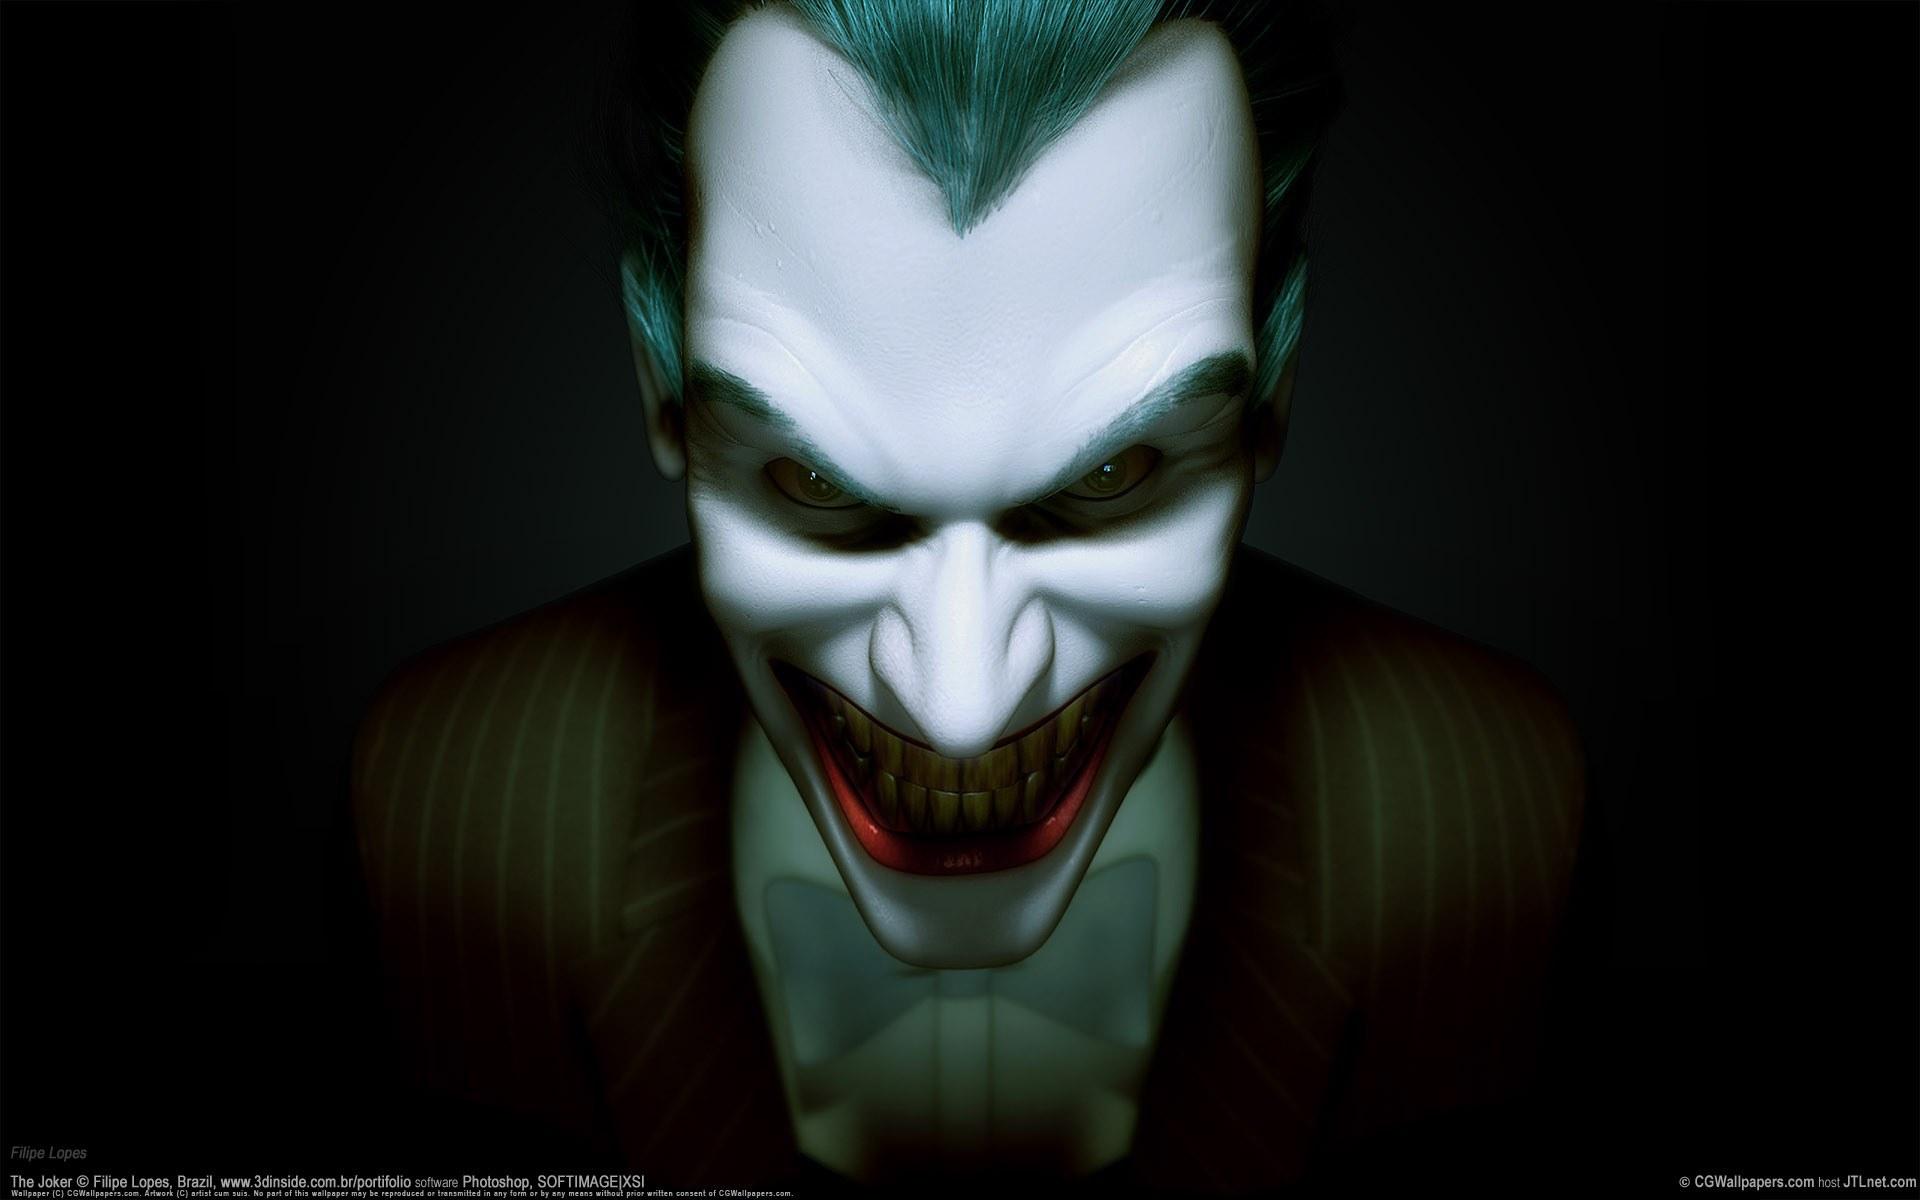 Scary Joker Wallpaper , Find HD Wallpaper For Free